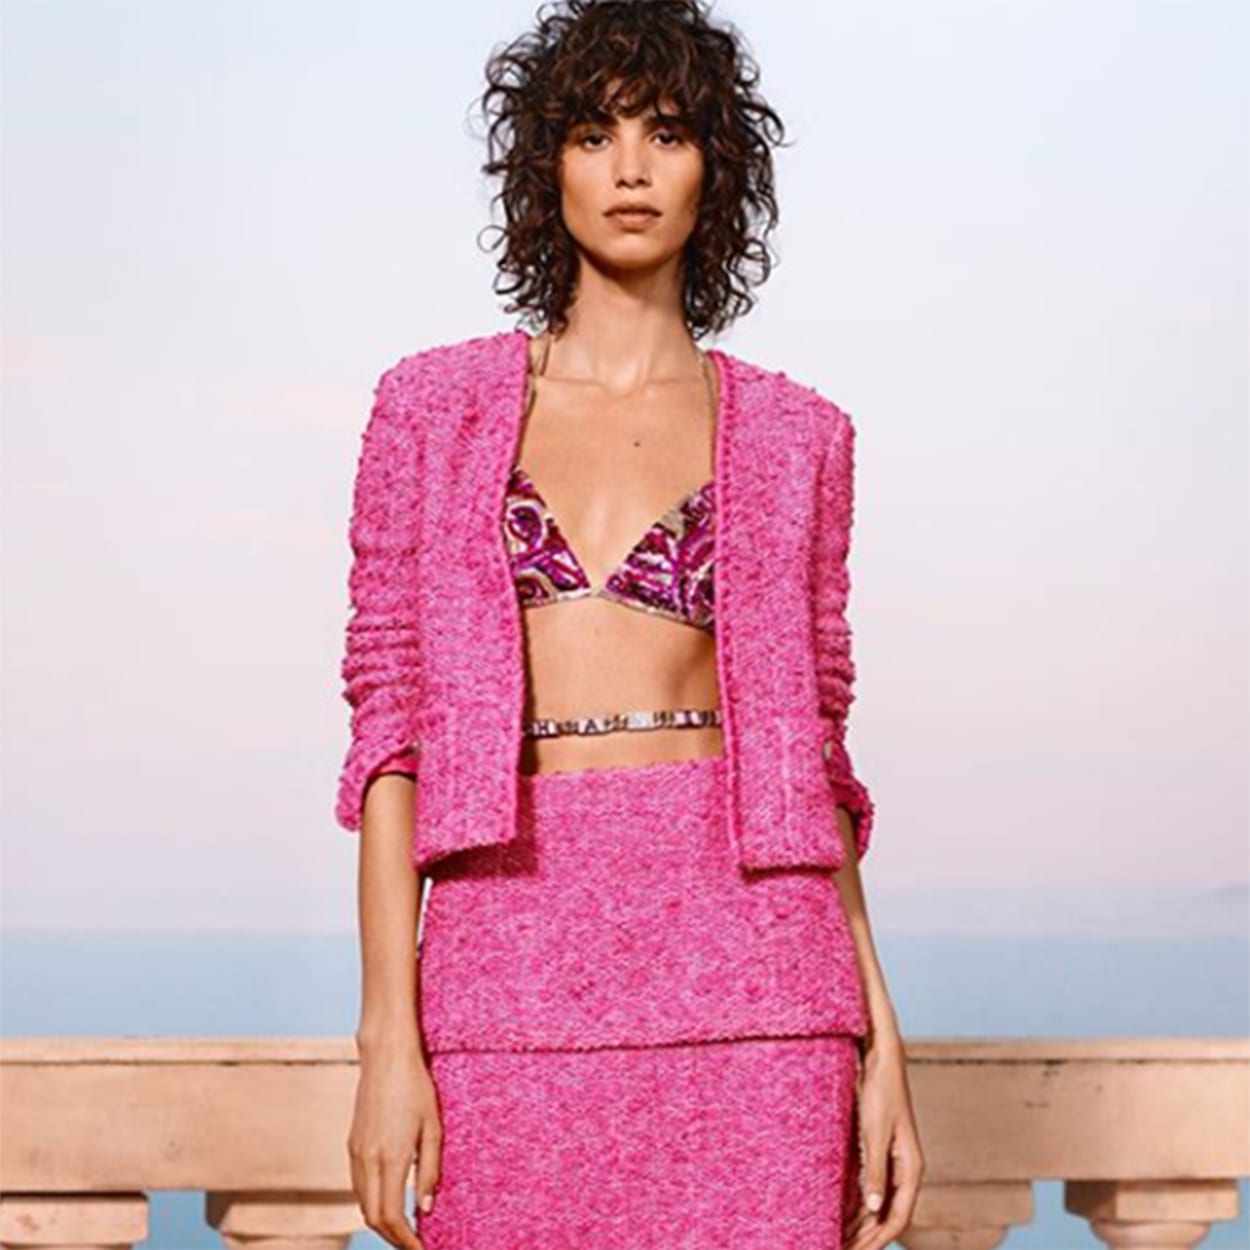 Foto de modelo com look pink trabalhado com casaqueto e top estilo curtinha bordado